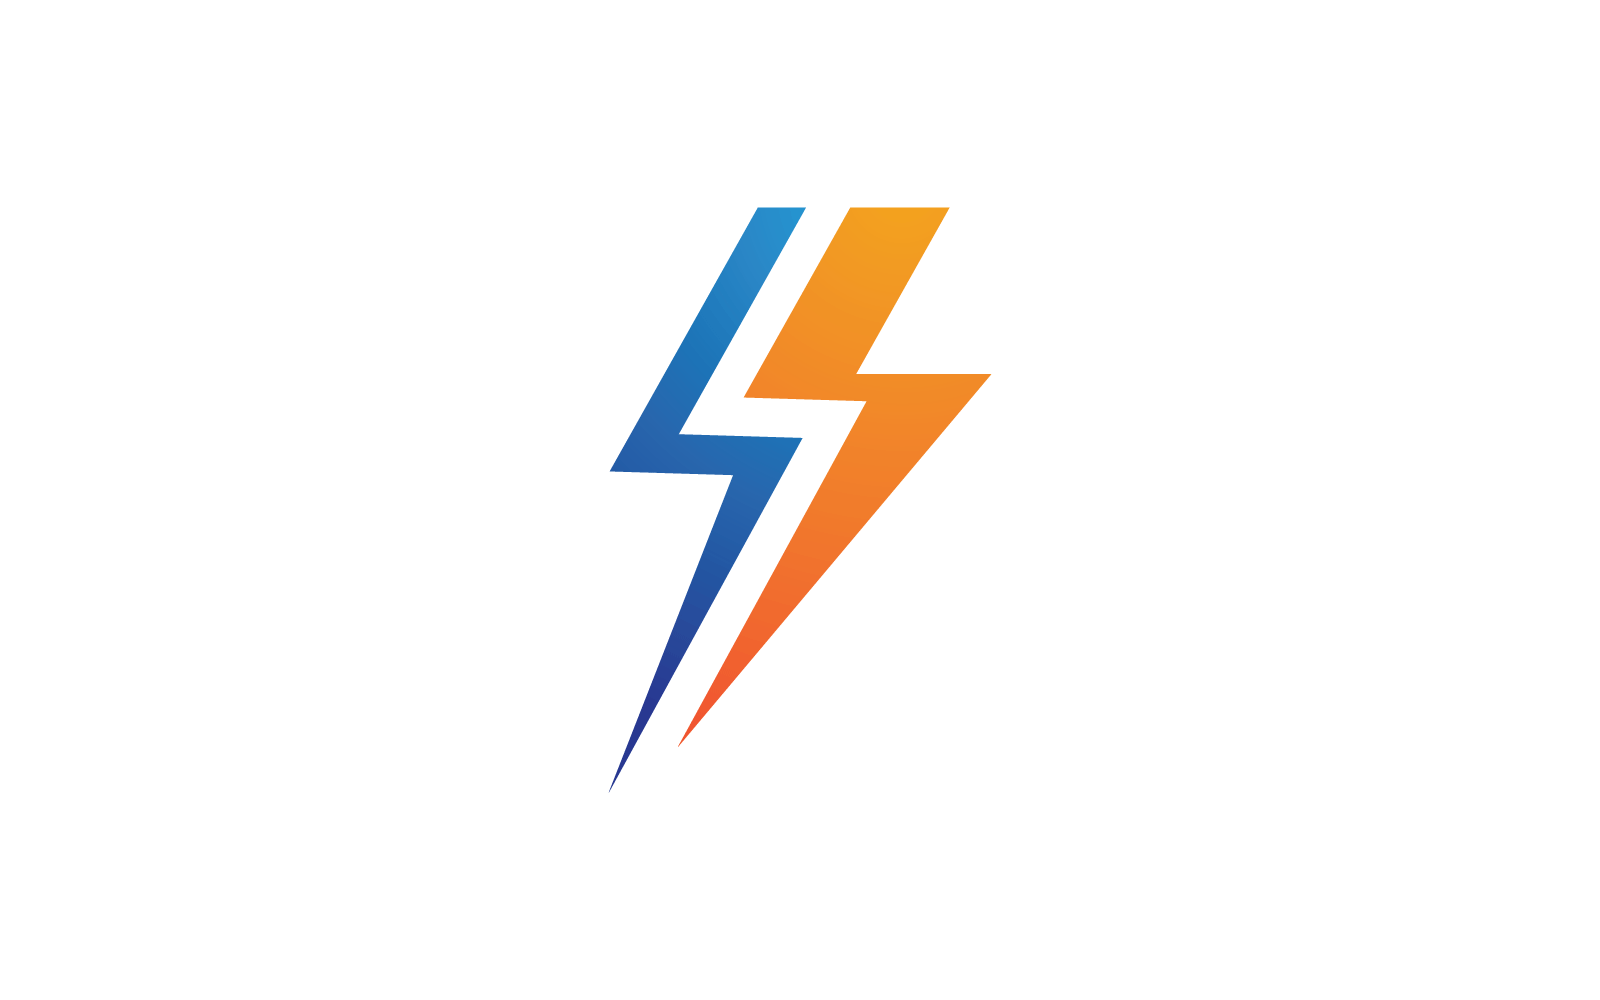 Power lightning power energy logo illustration flat design Logo Template